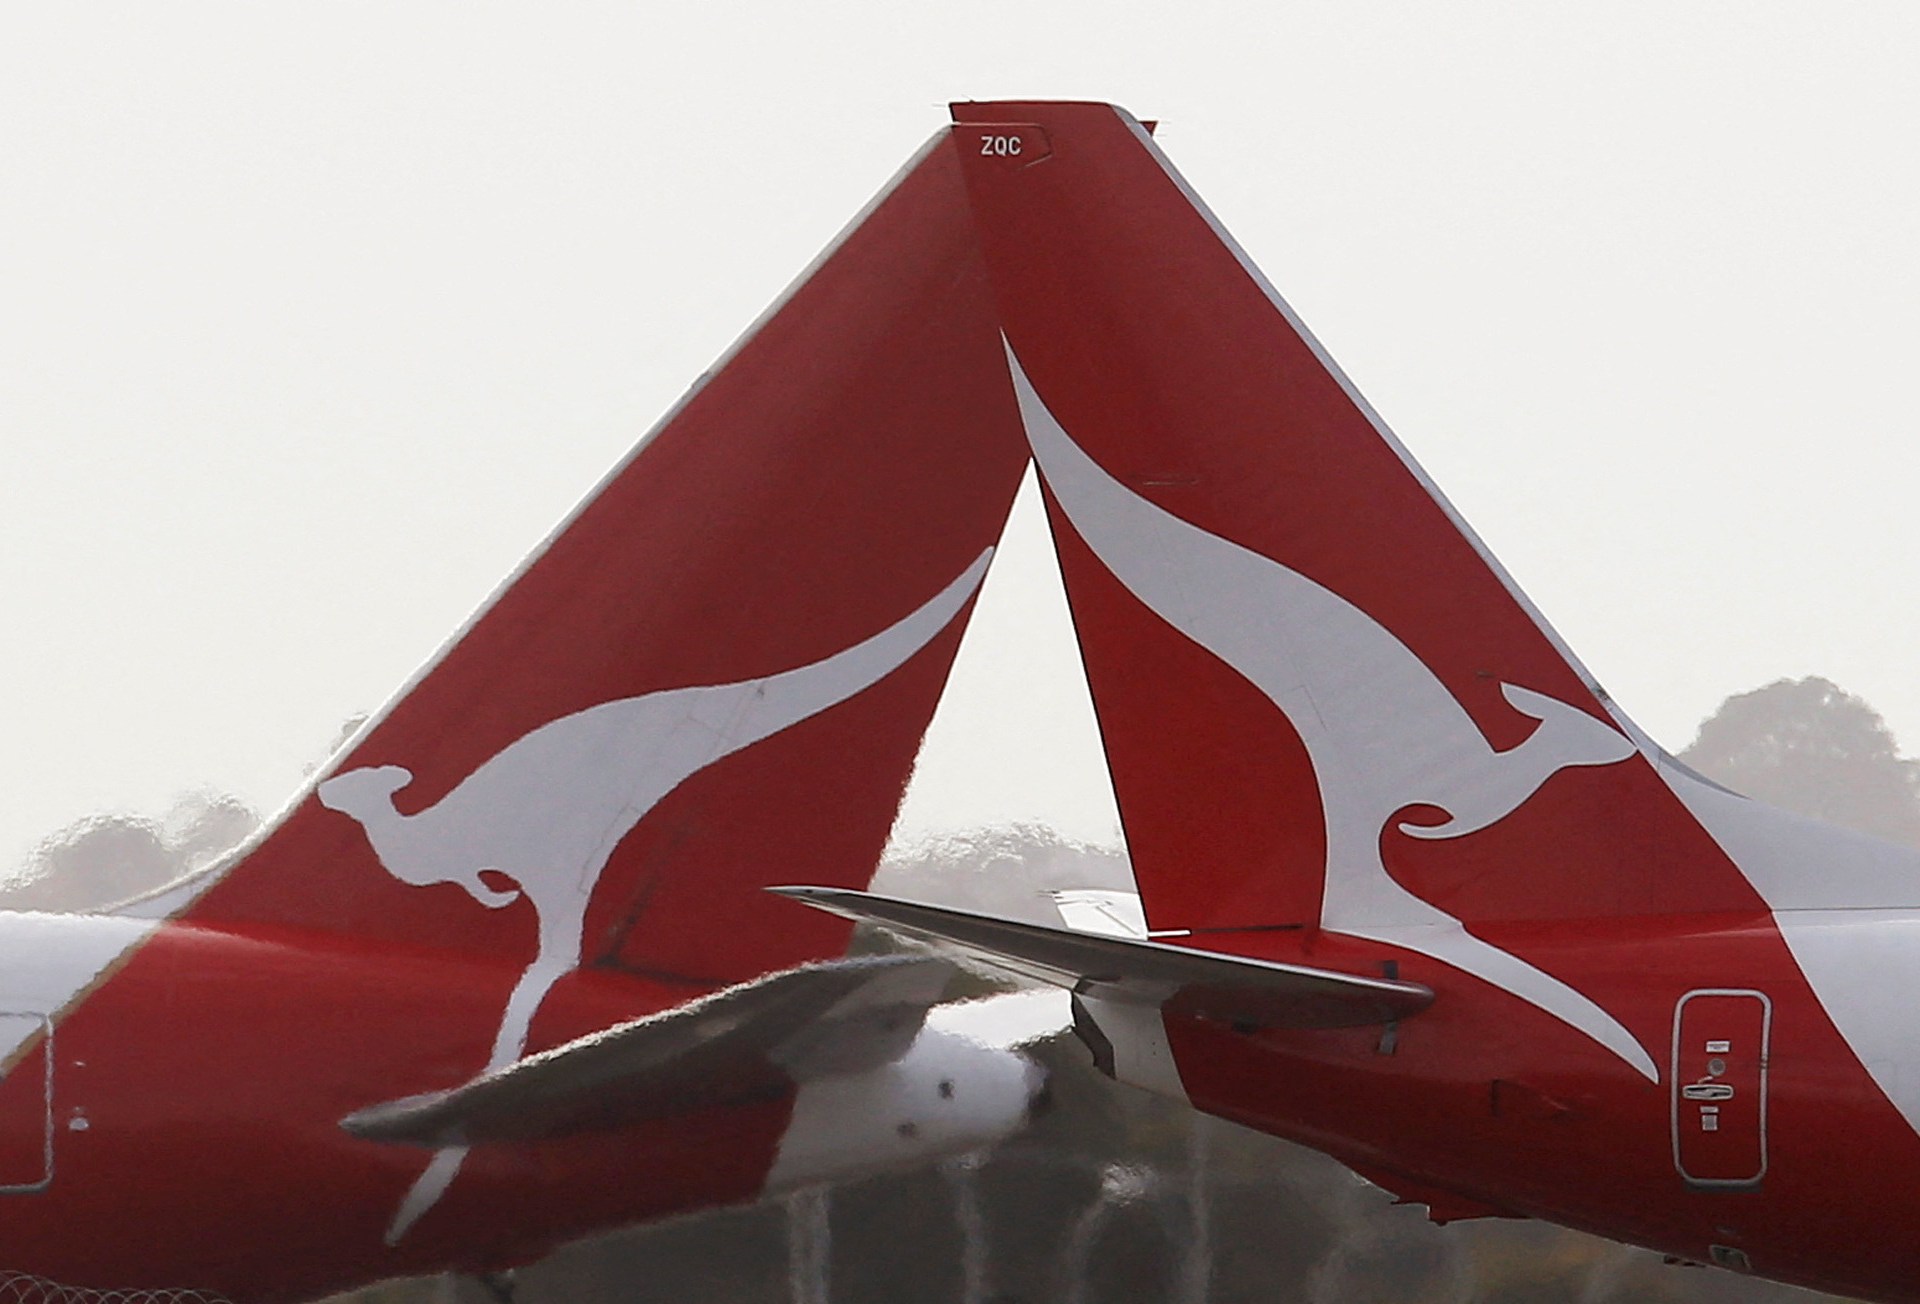 Qantas Australia memilih kepala eksekutif wanita pertama saat Joyce bersiap untuk berangkat |  Penerbangan